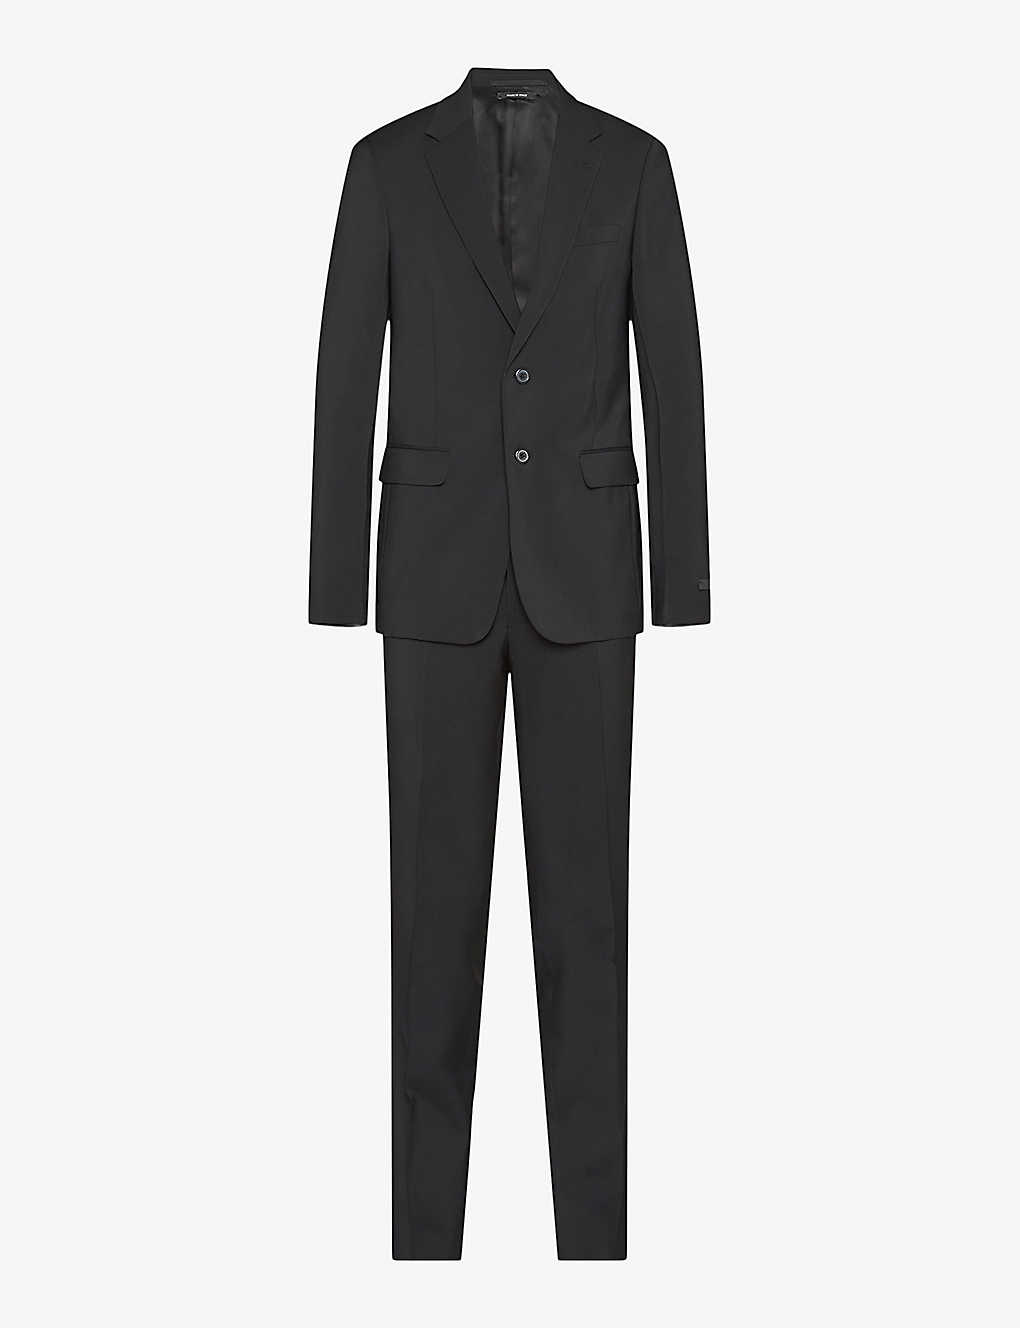 Prada Mens Black Single-breasted Slim-fit Wool Suit